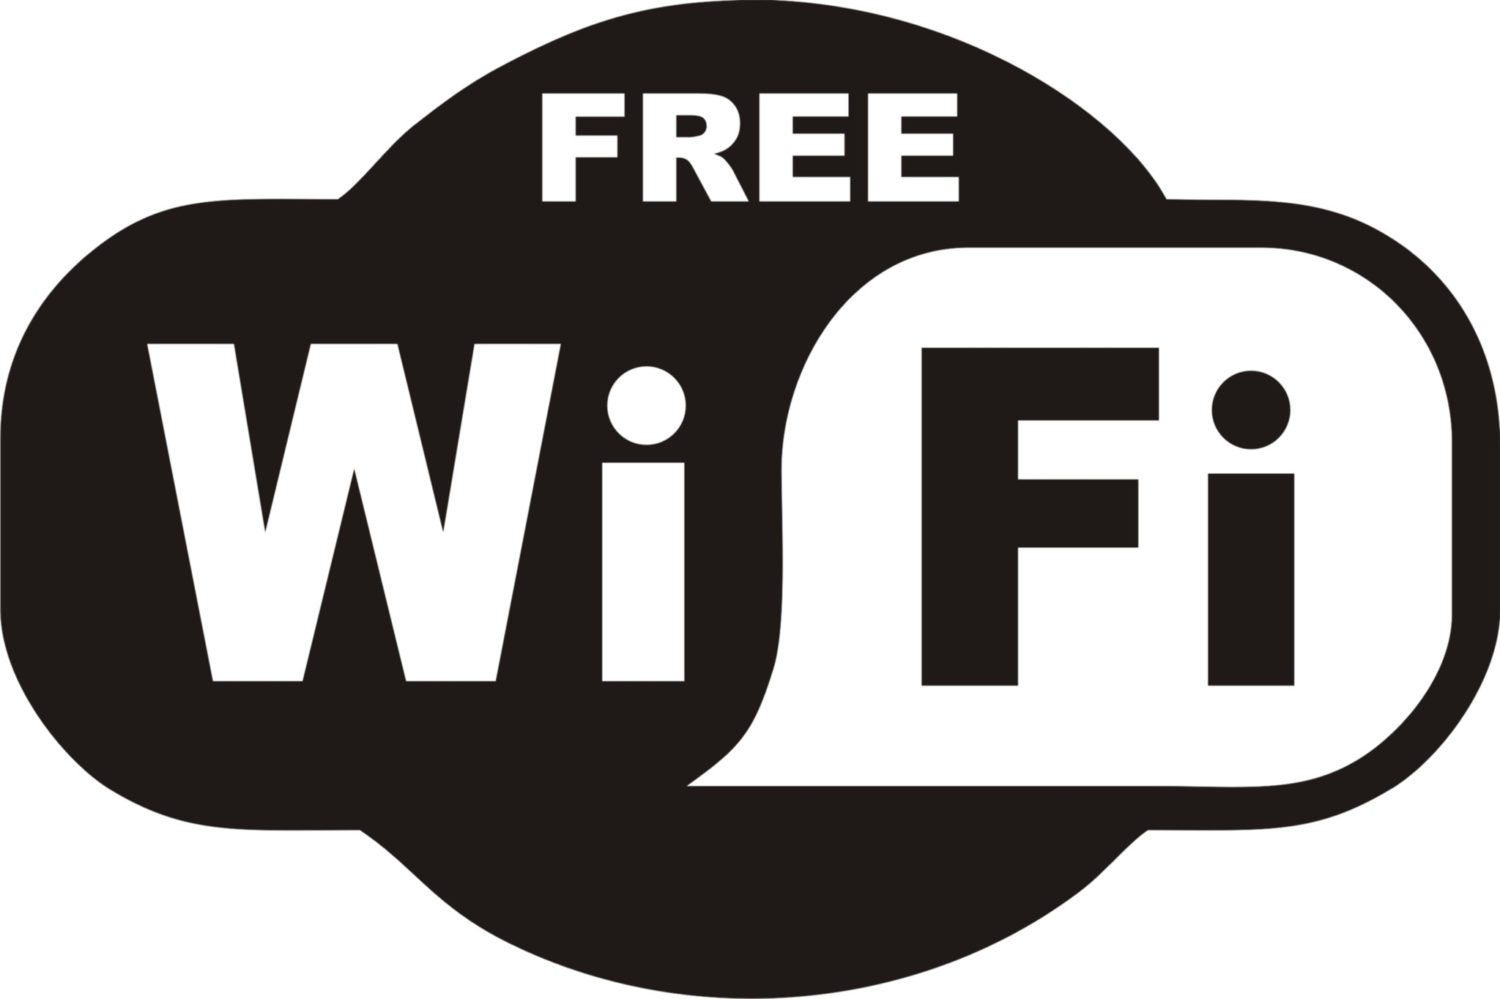 FREE Wi FI logo